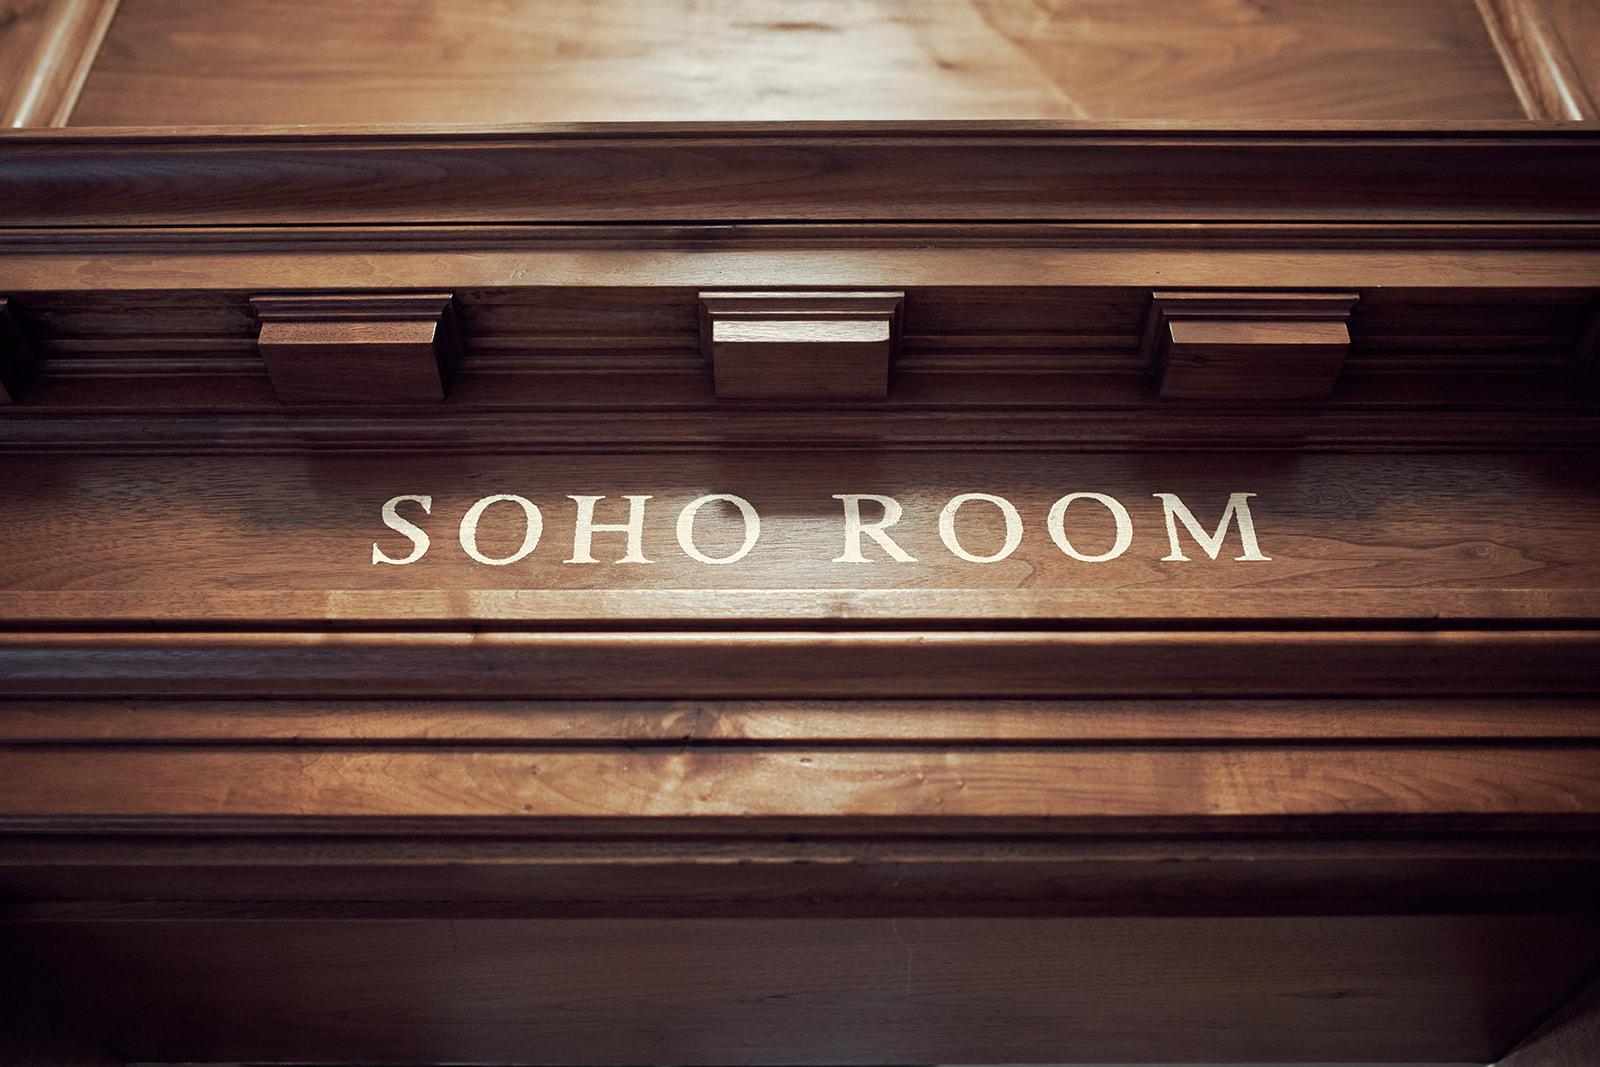 soho room at Marylebone Town Hall